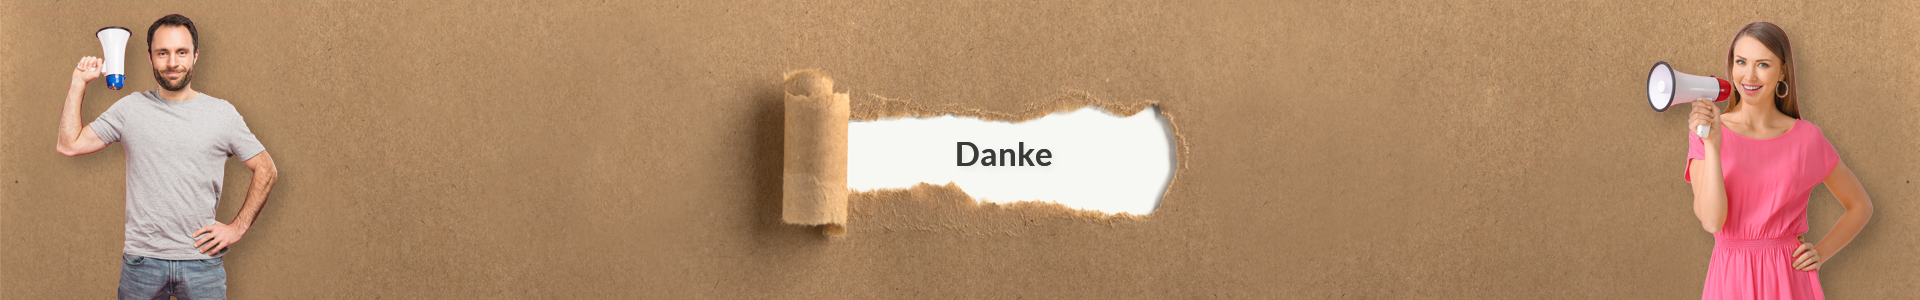 ebotschafter.com - banner - Danke - D16b